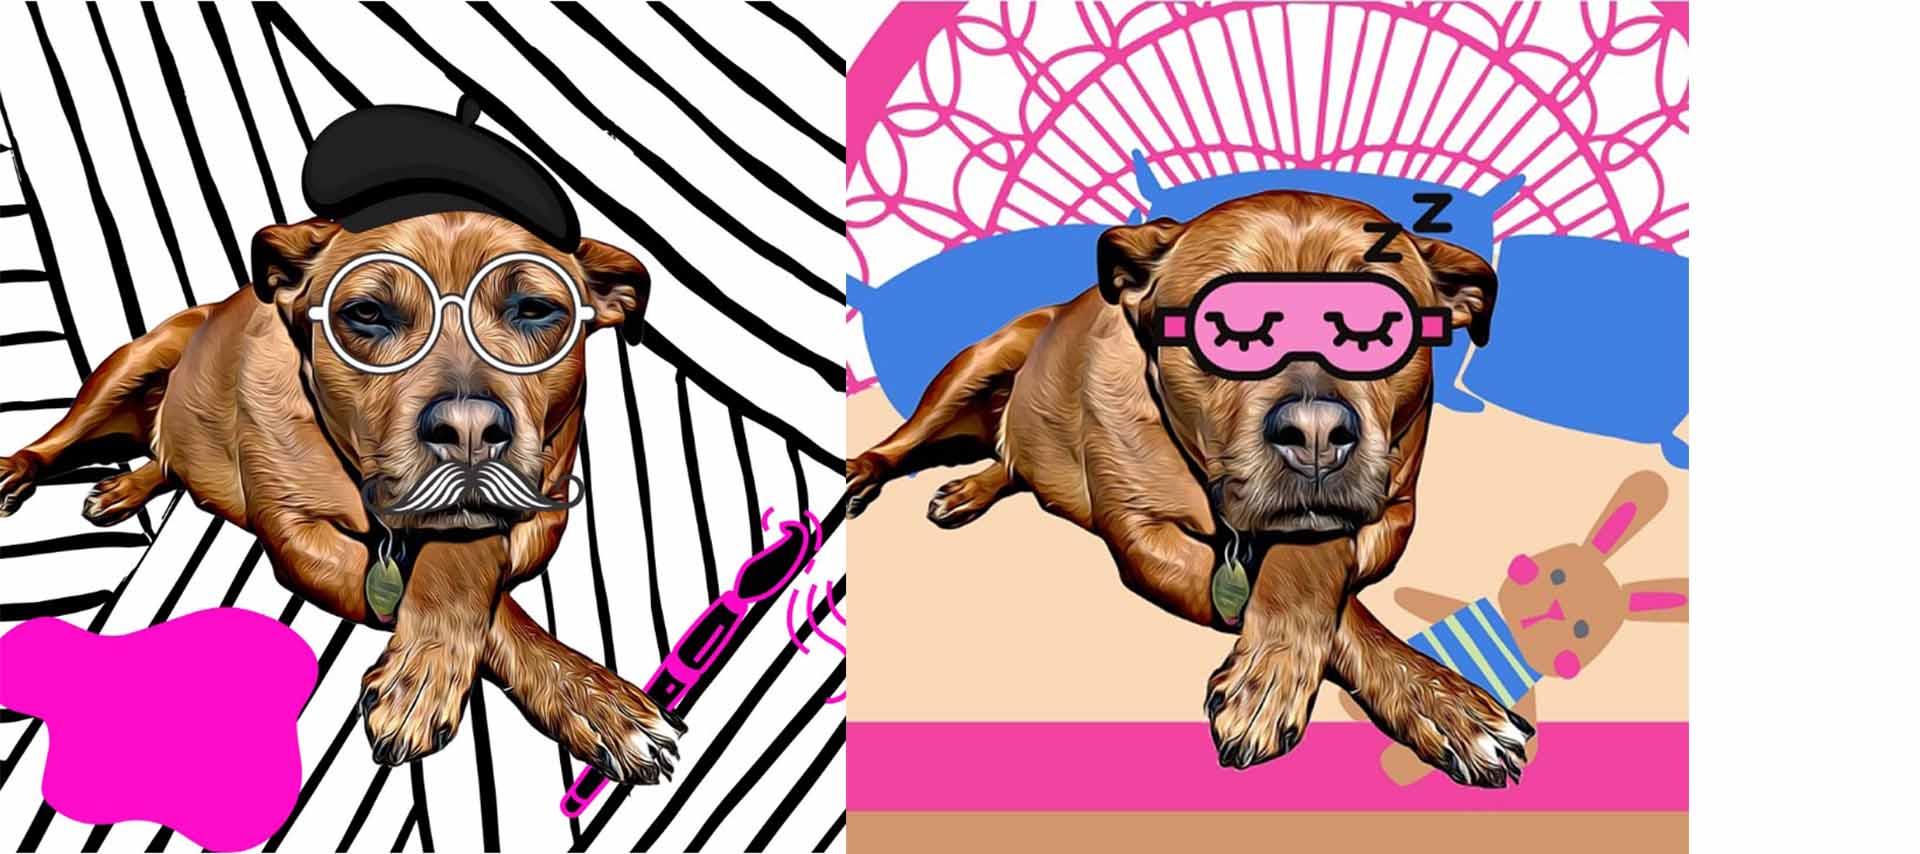 dogs in nft art format